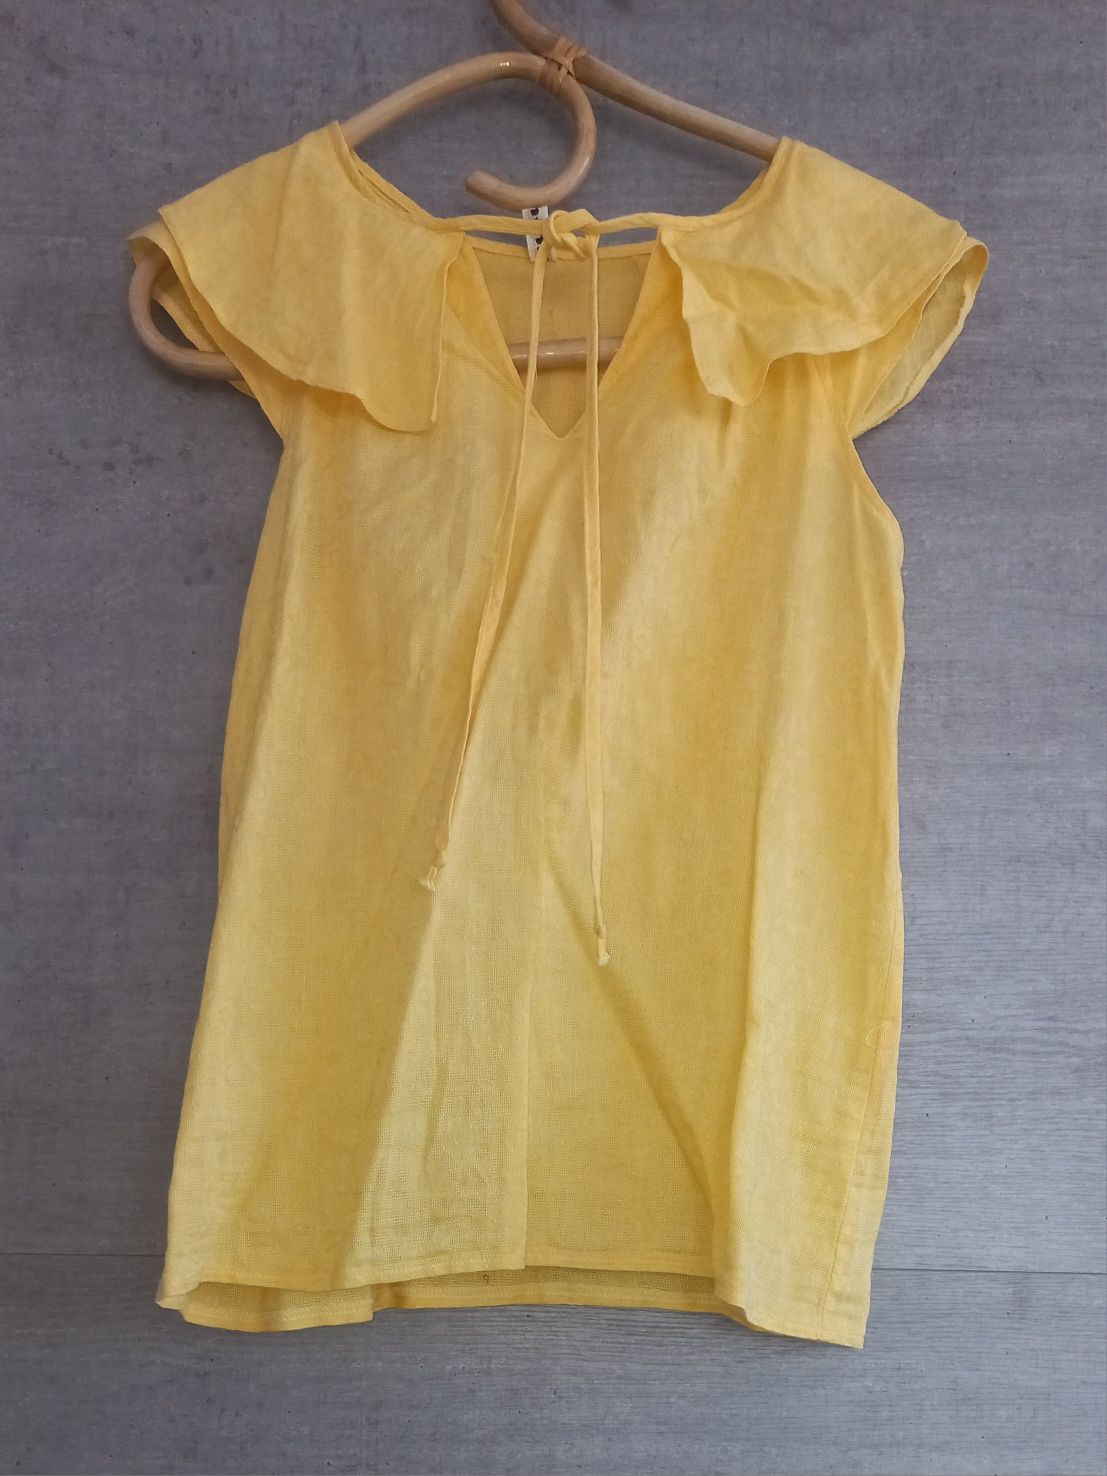 Piekna żółta bluzka firmy Damina, roz. S, stan bdb.